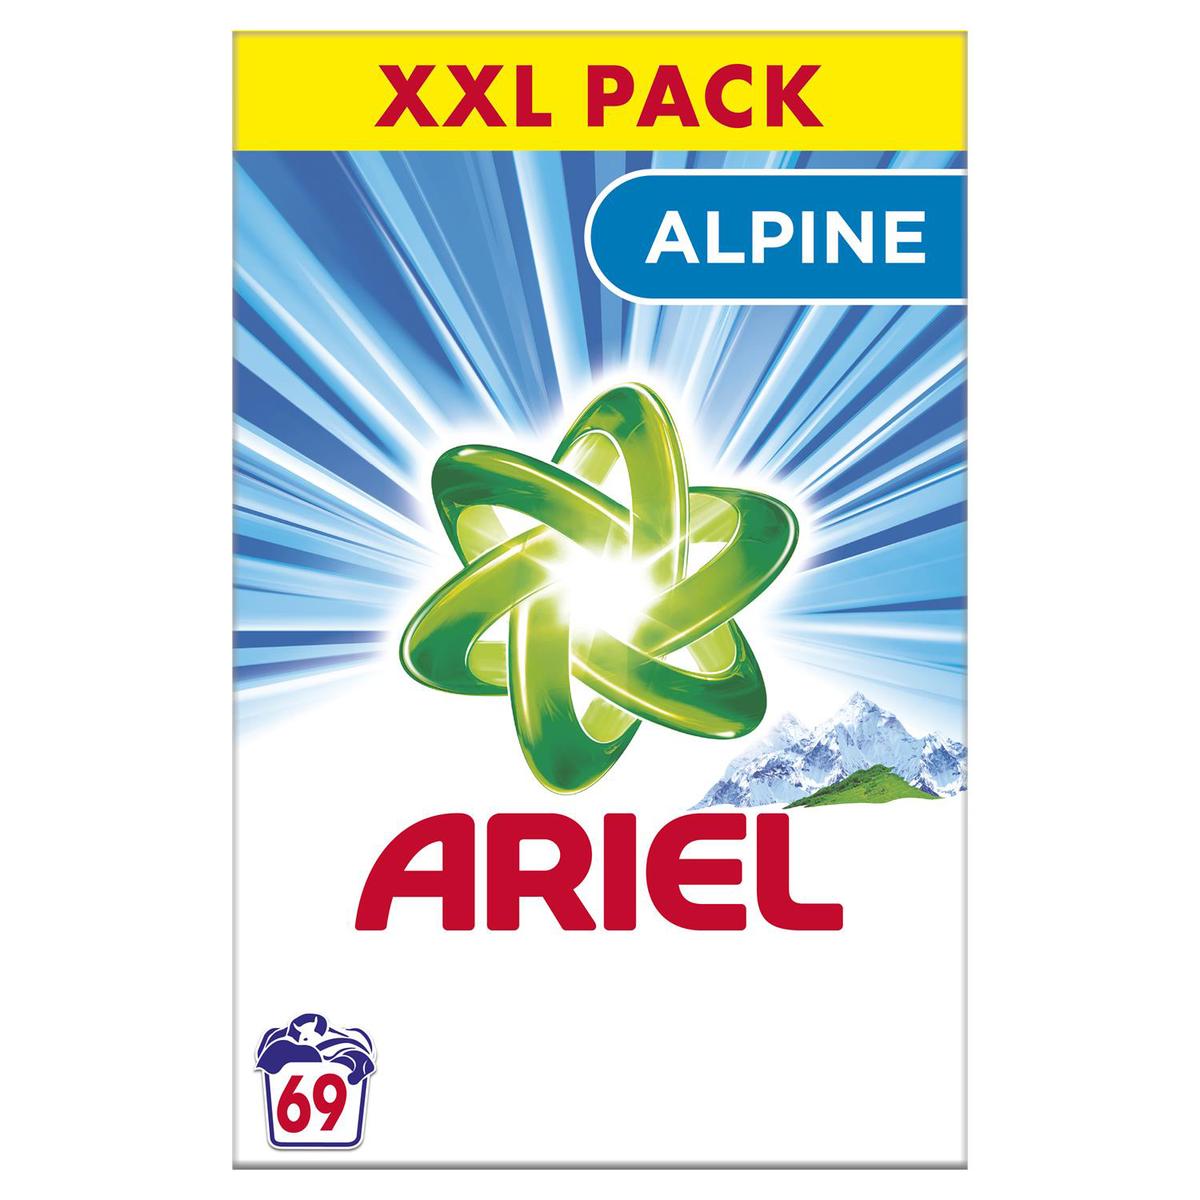 Achat / Vente Ariel Lessive capsule 3en1 fraîcheur Alpine, 33 capsules